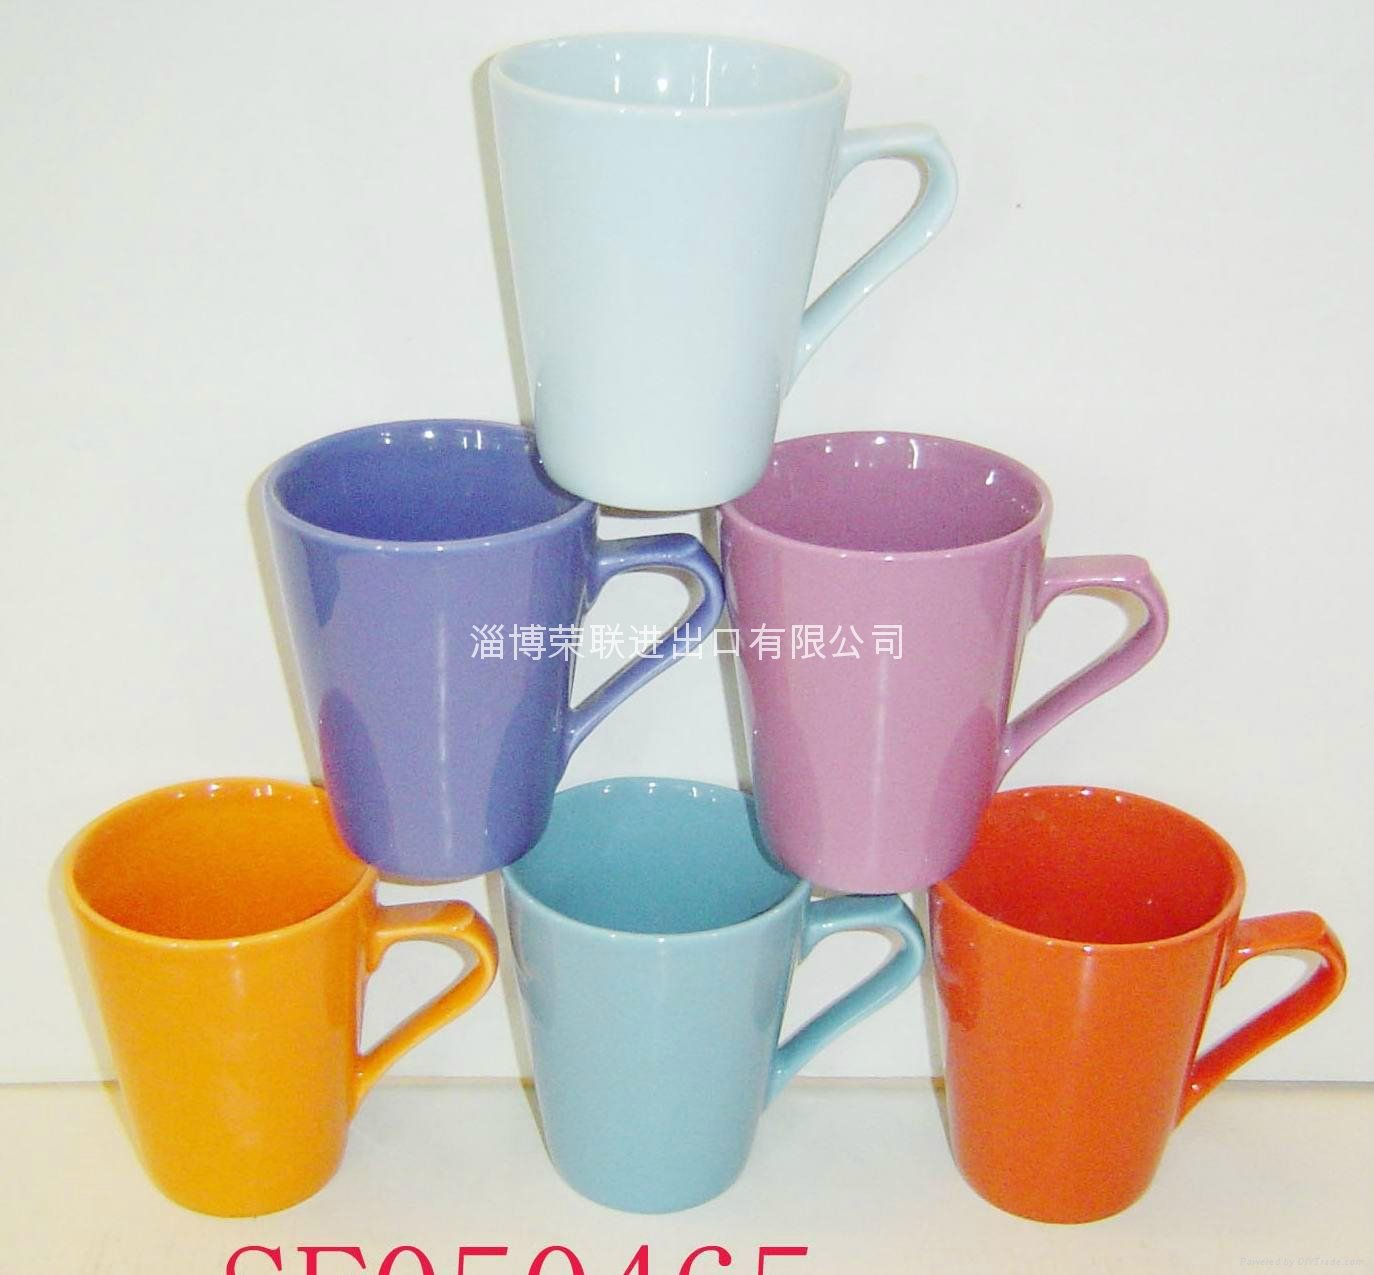 ceramic mug 5